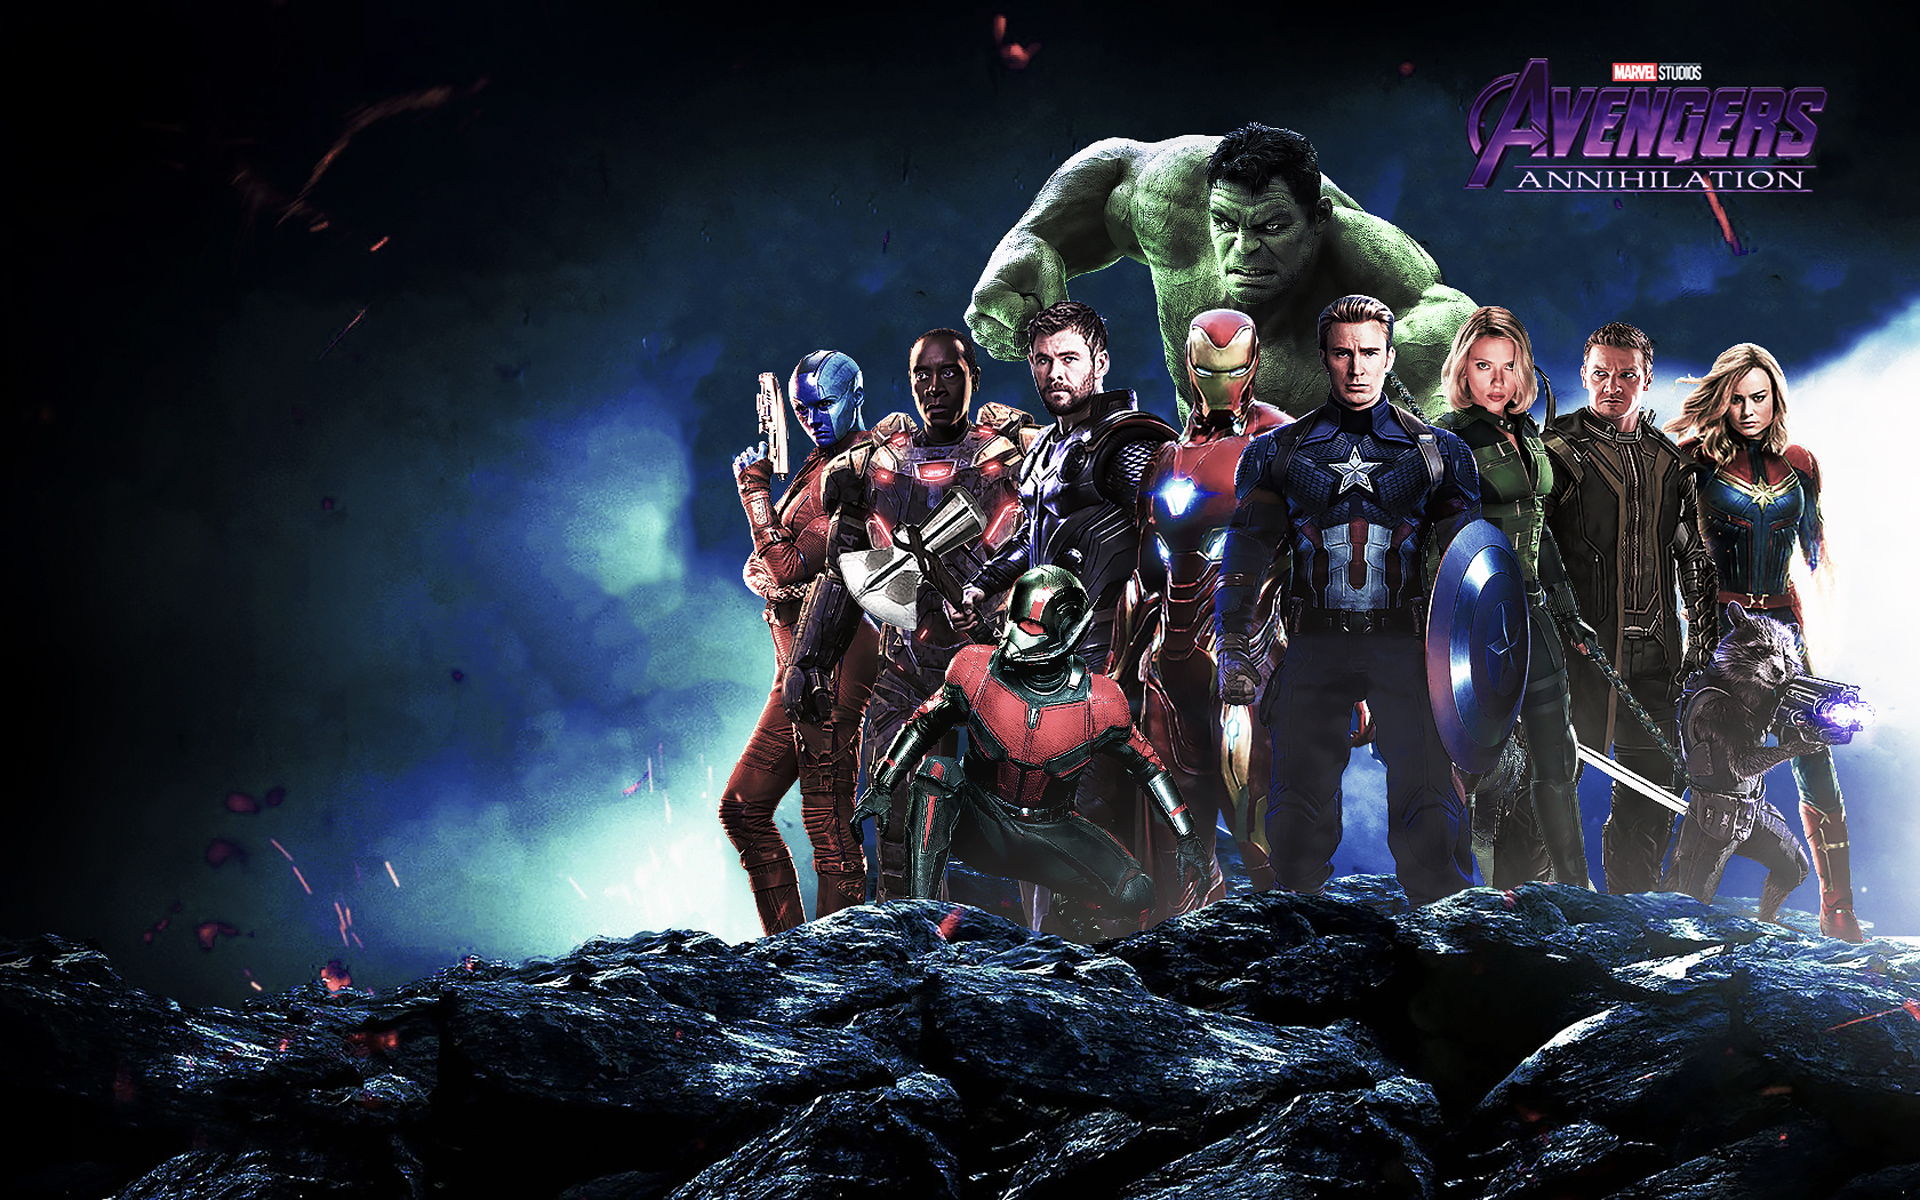 Wallpaper 4k Avengers Annihilation 2019 movies wallpaper, avengers